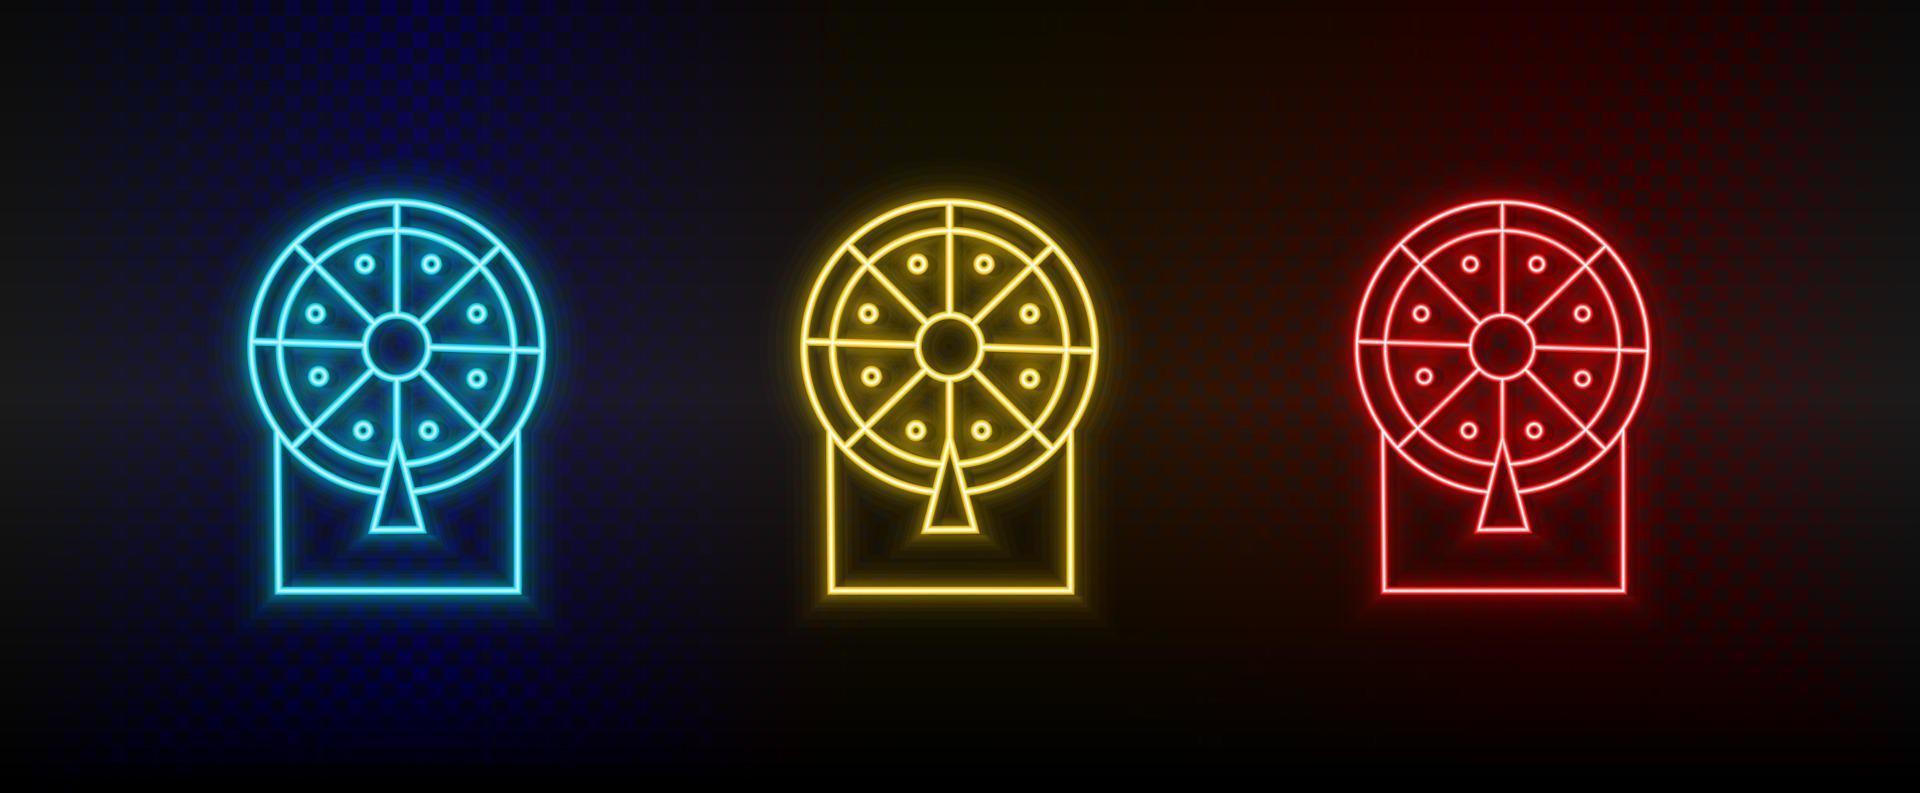 icônes au néon. casino chance loterie rétro. ensemble d'icônes vectorielles néon rouge, bleu, jaune sur fond sombre vecteur